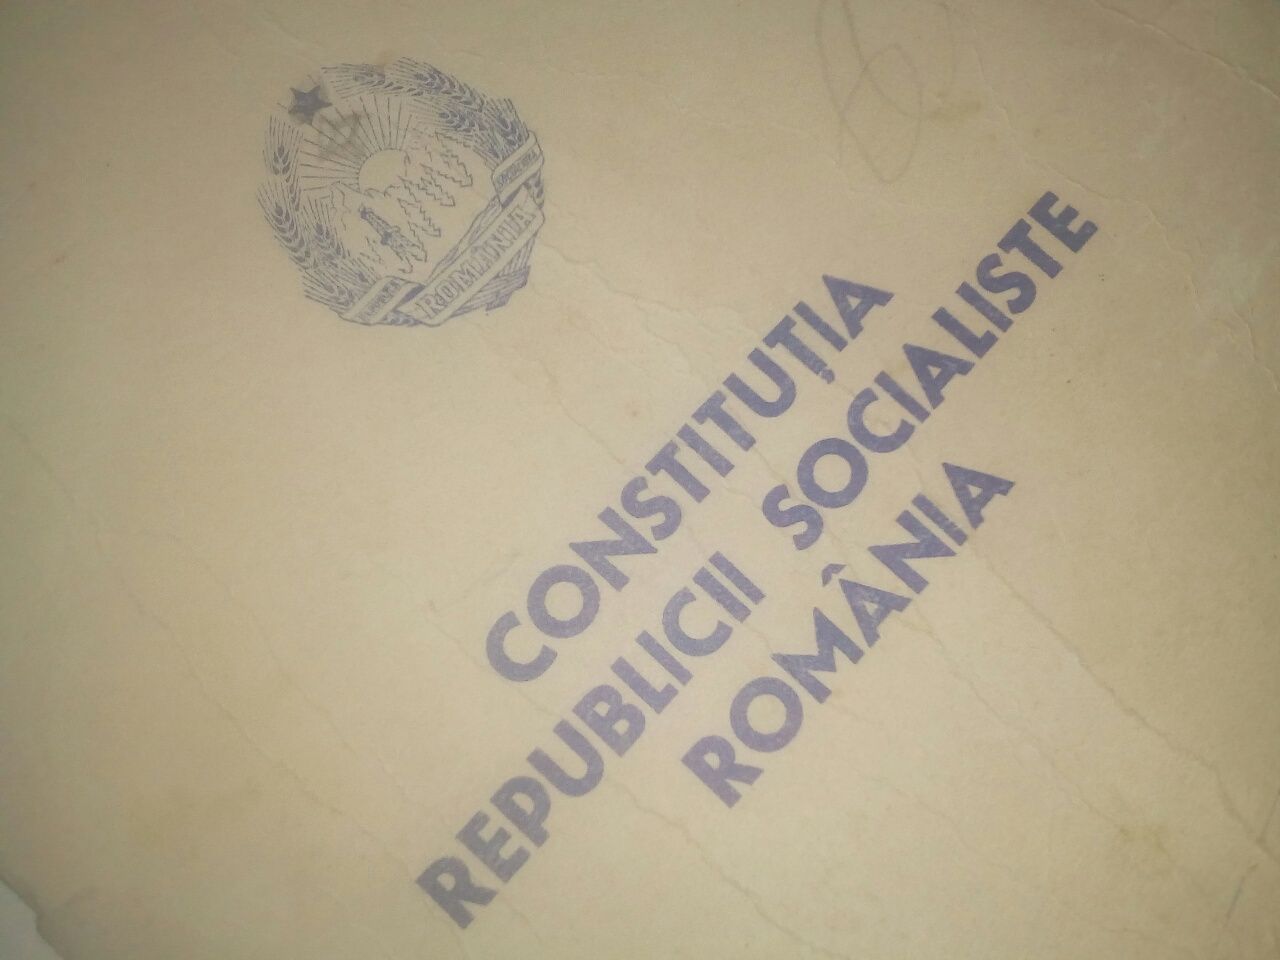 Constitutia republicii socialiste Romania/RSR/colectionari/anticariat